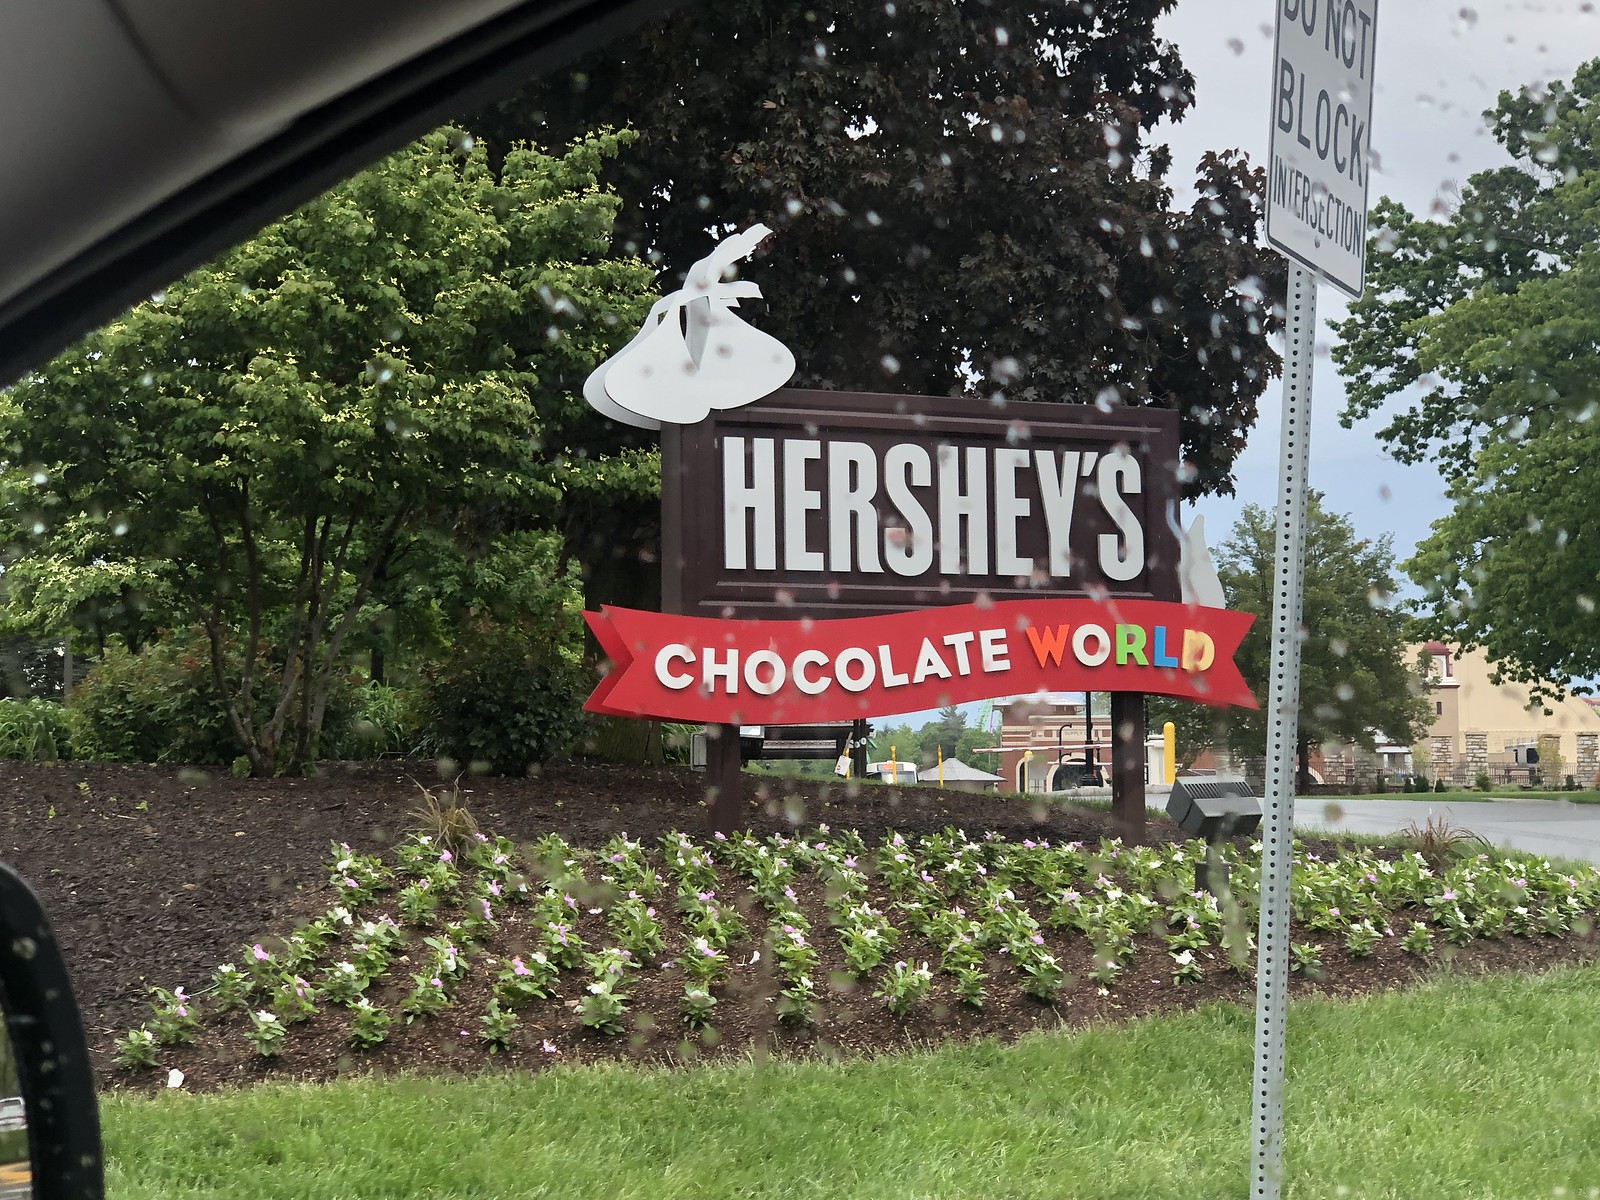 Hersheys chocolate world